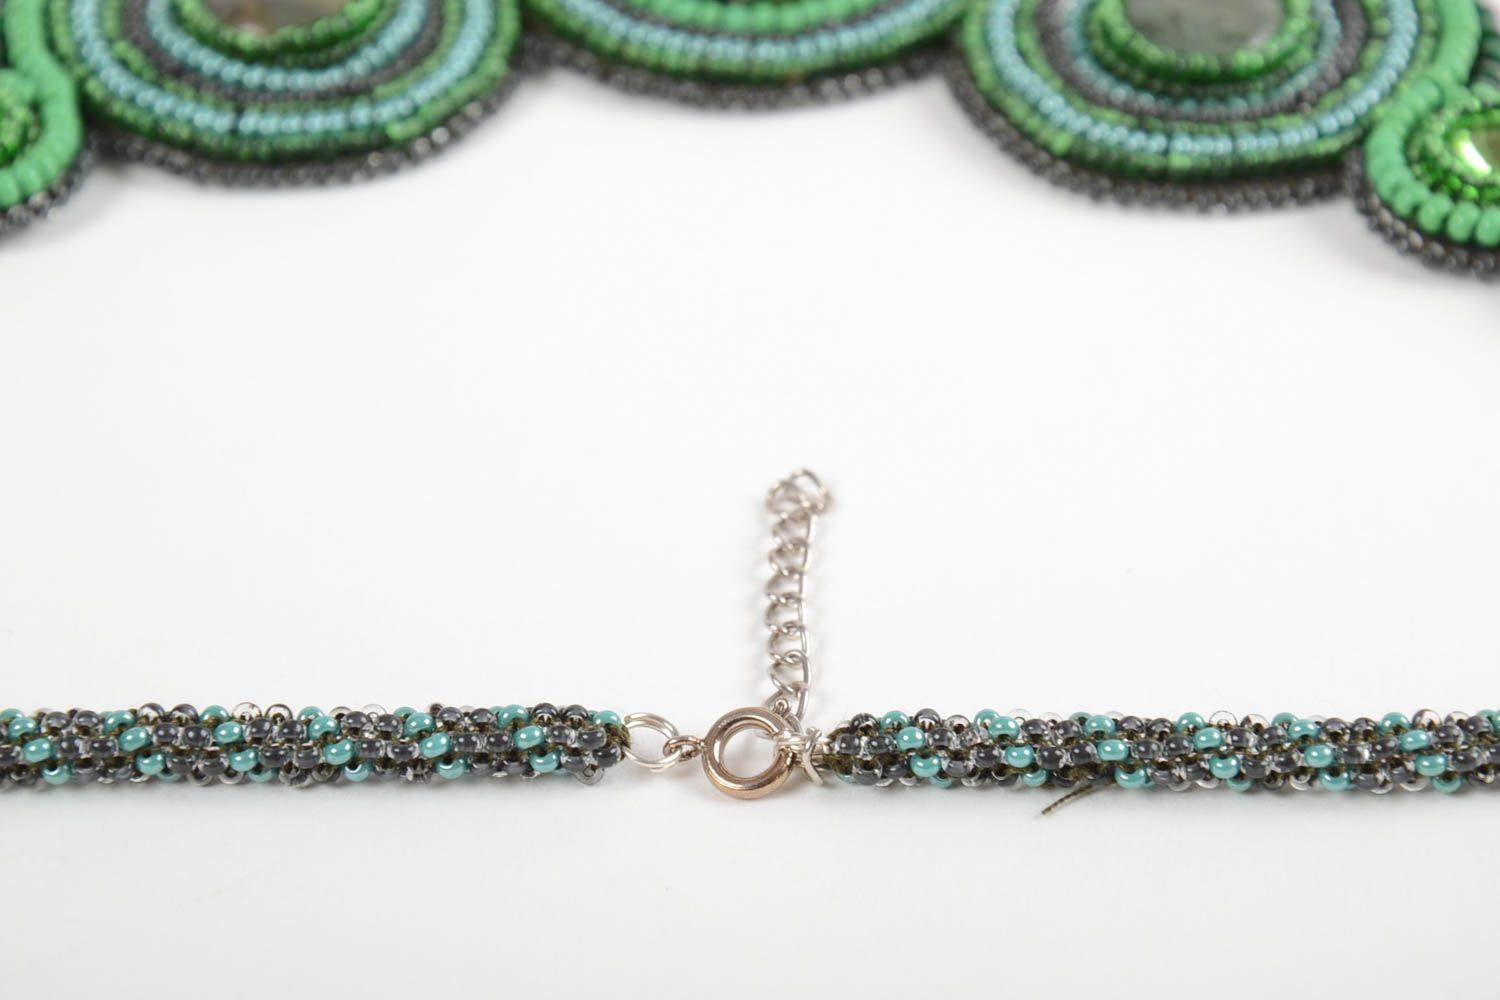 Ожерелье из бисера и натуральных камней на коже ручной работы в зеленых тонах фото 4